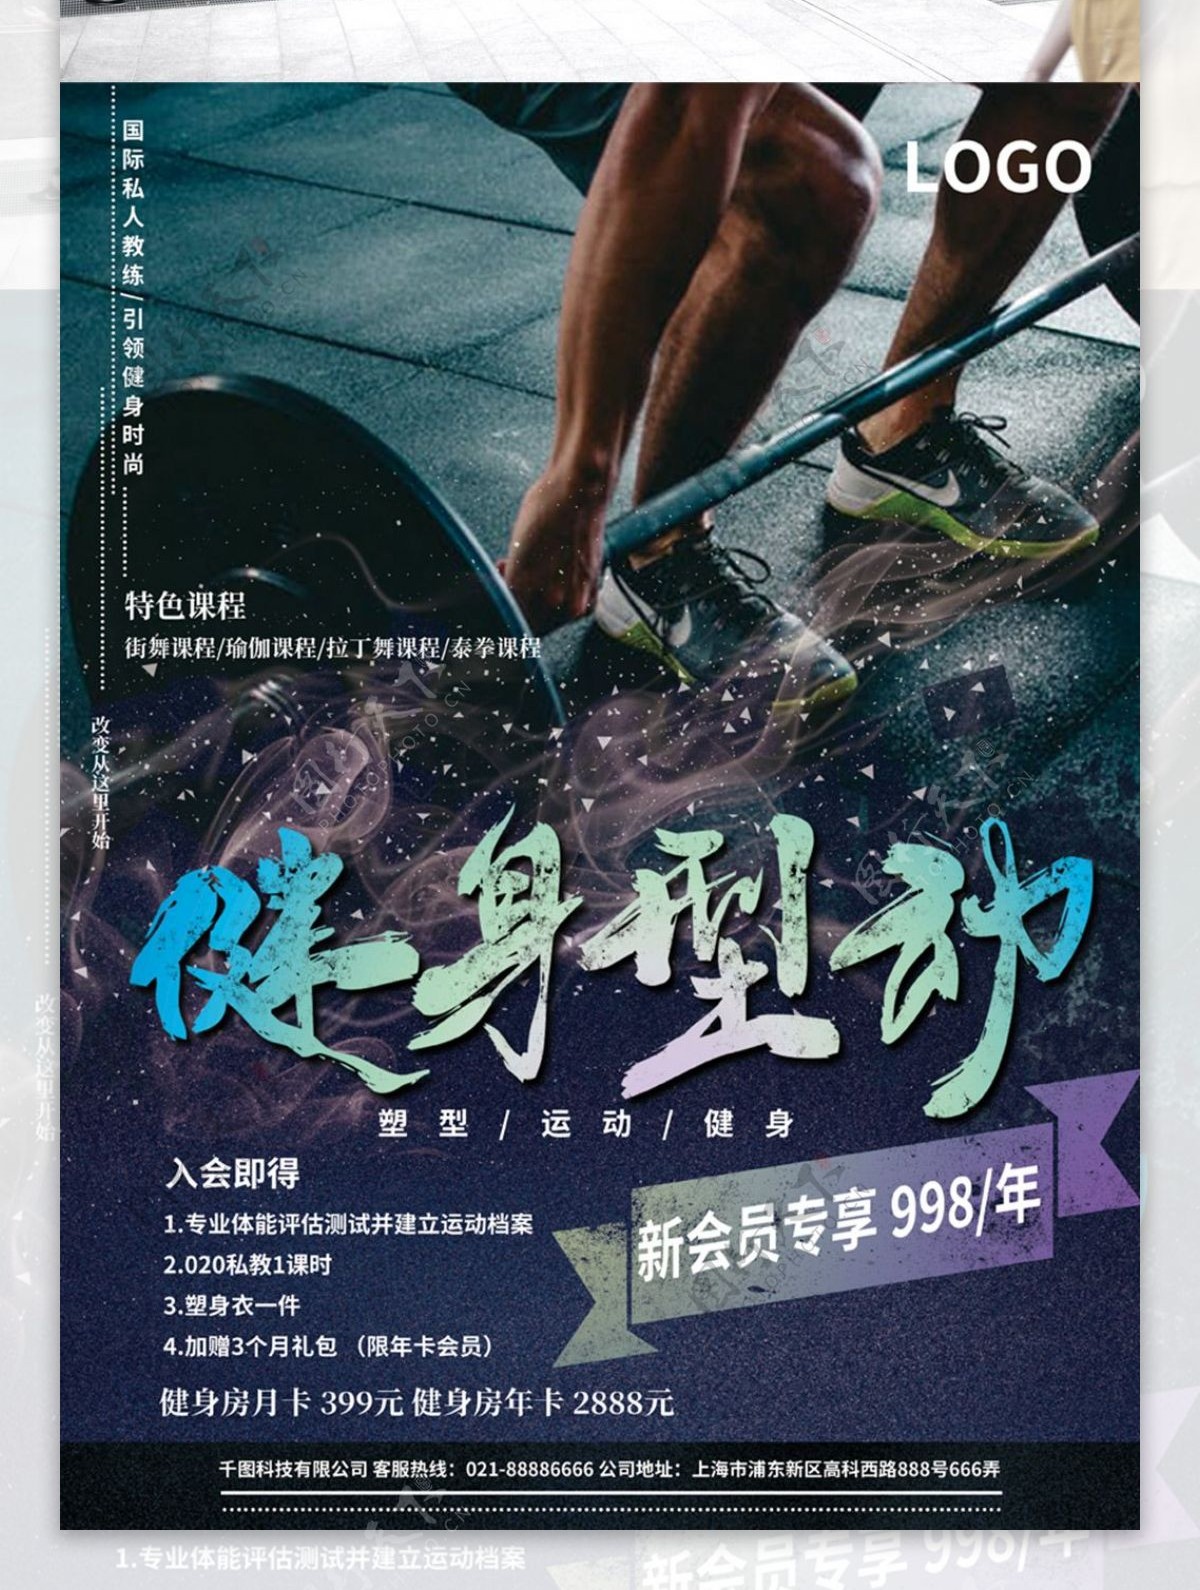 酷炫健身型动个性健身海报设计PSD模板